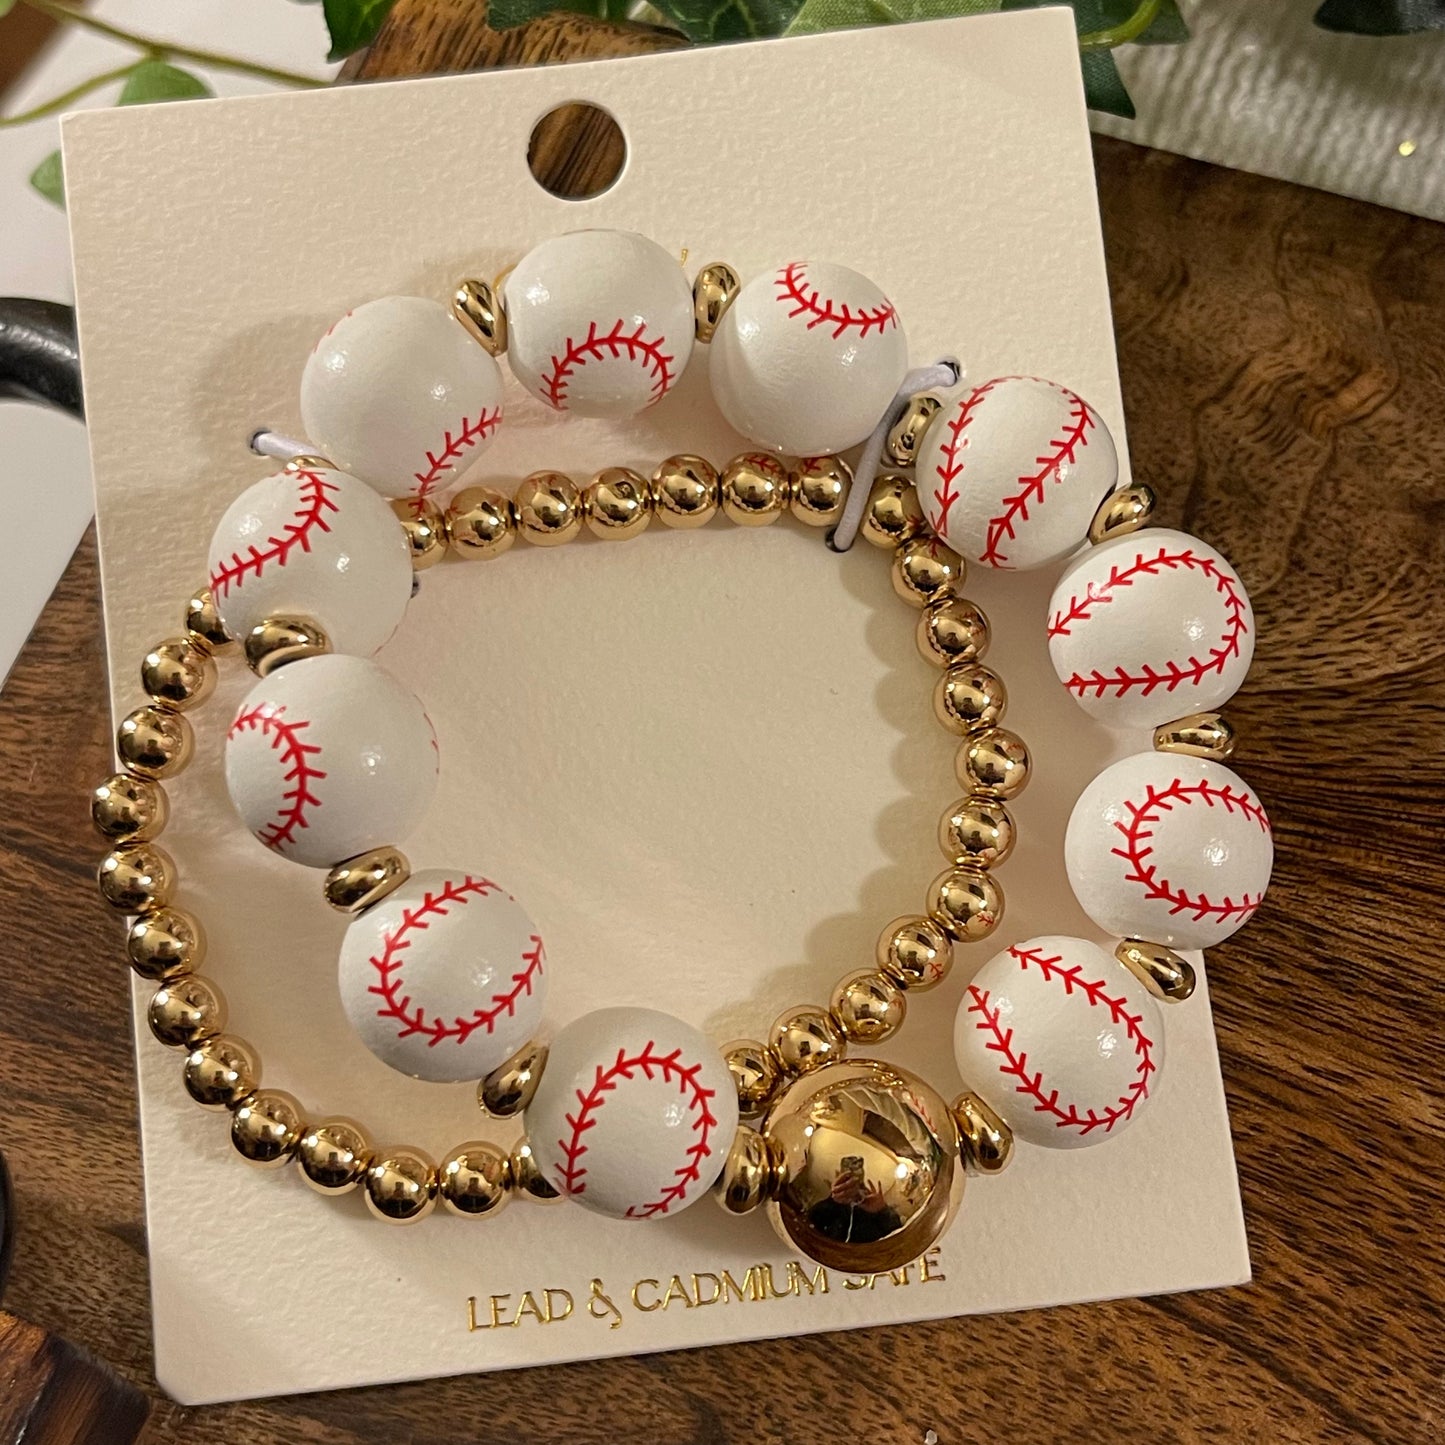 Baseball Stretch Bracelet